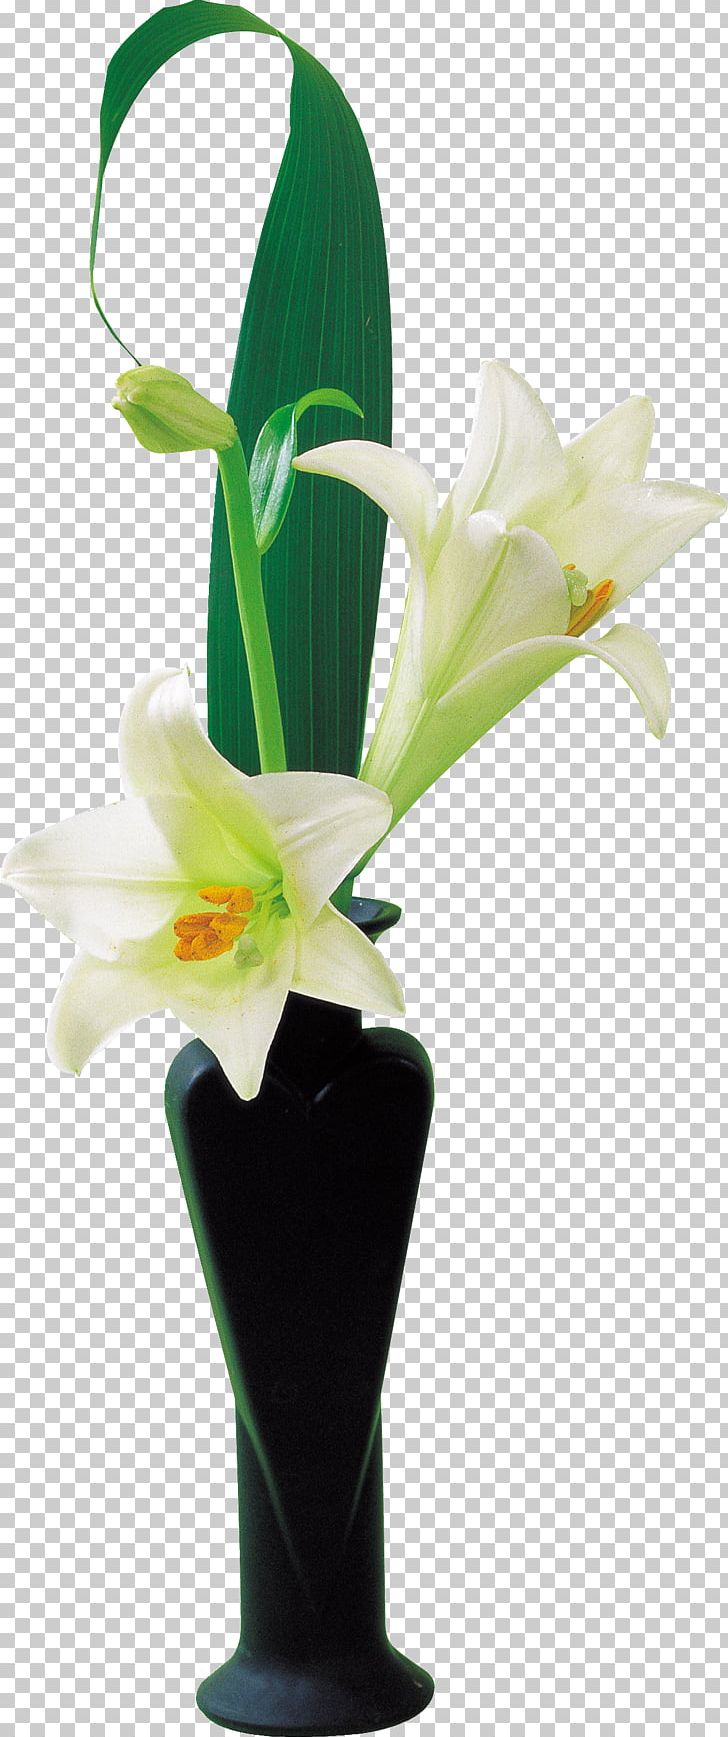 Cut Flowers Vase Lilium PNG, Clipart, Artificial Flower, Cut Flowers, Fleurdelis, Flora, Floral Design Free PNG Download